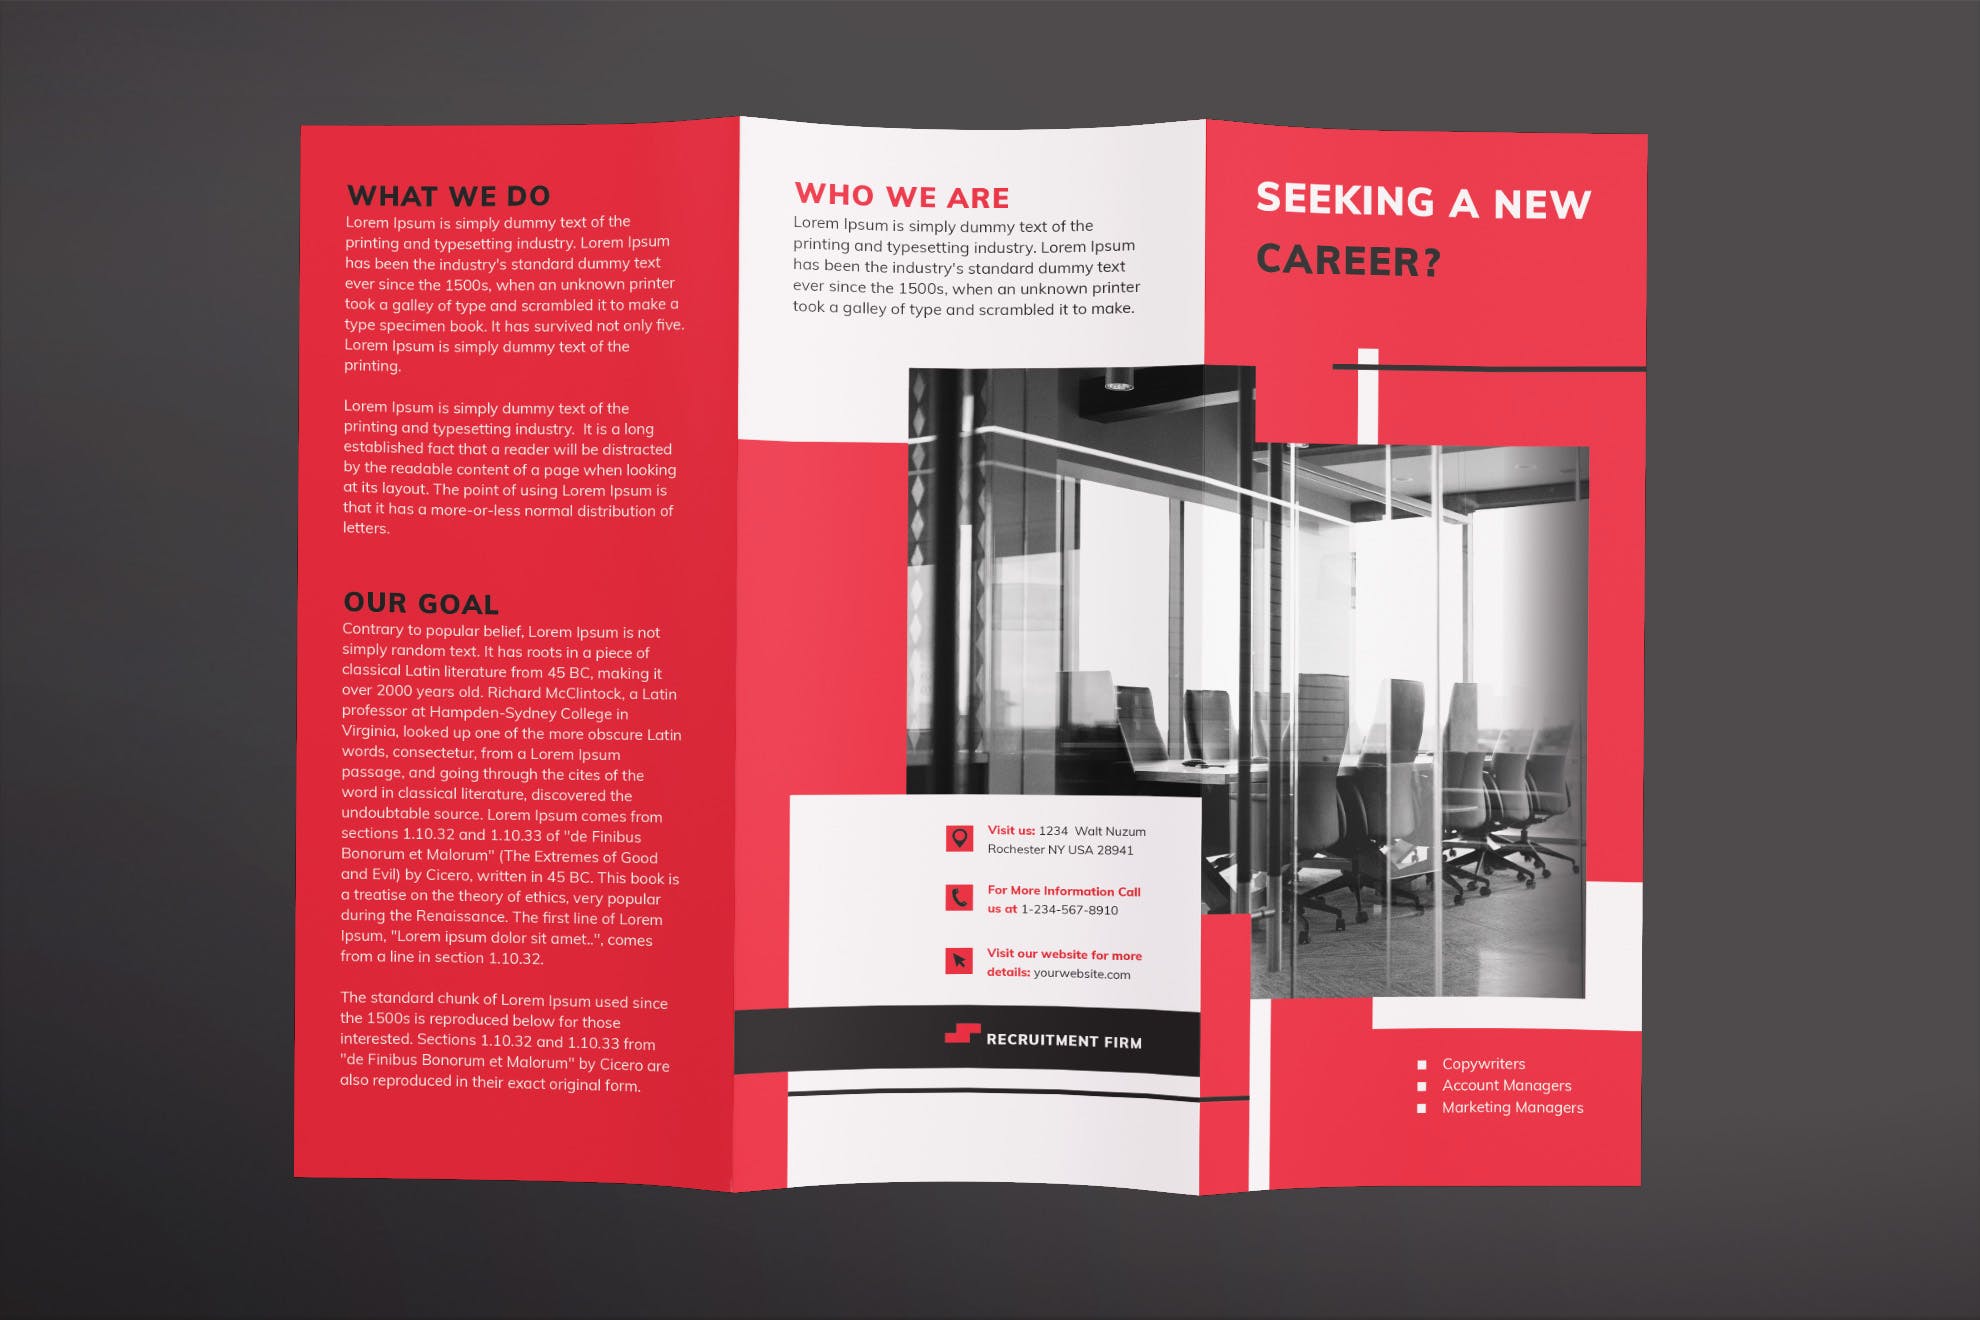 人力资源公司三折页宣传单设计模板 Recruitment Firm Brochure Trifold插图(1)